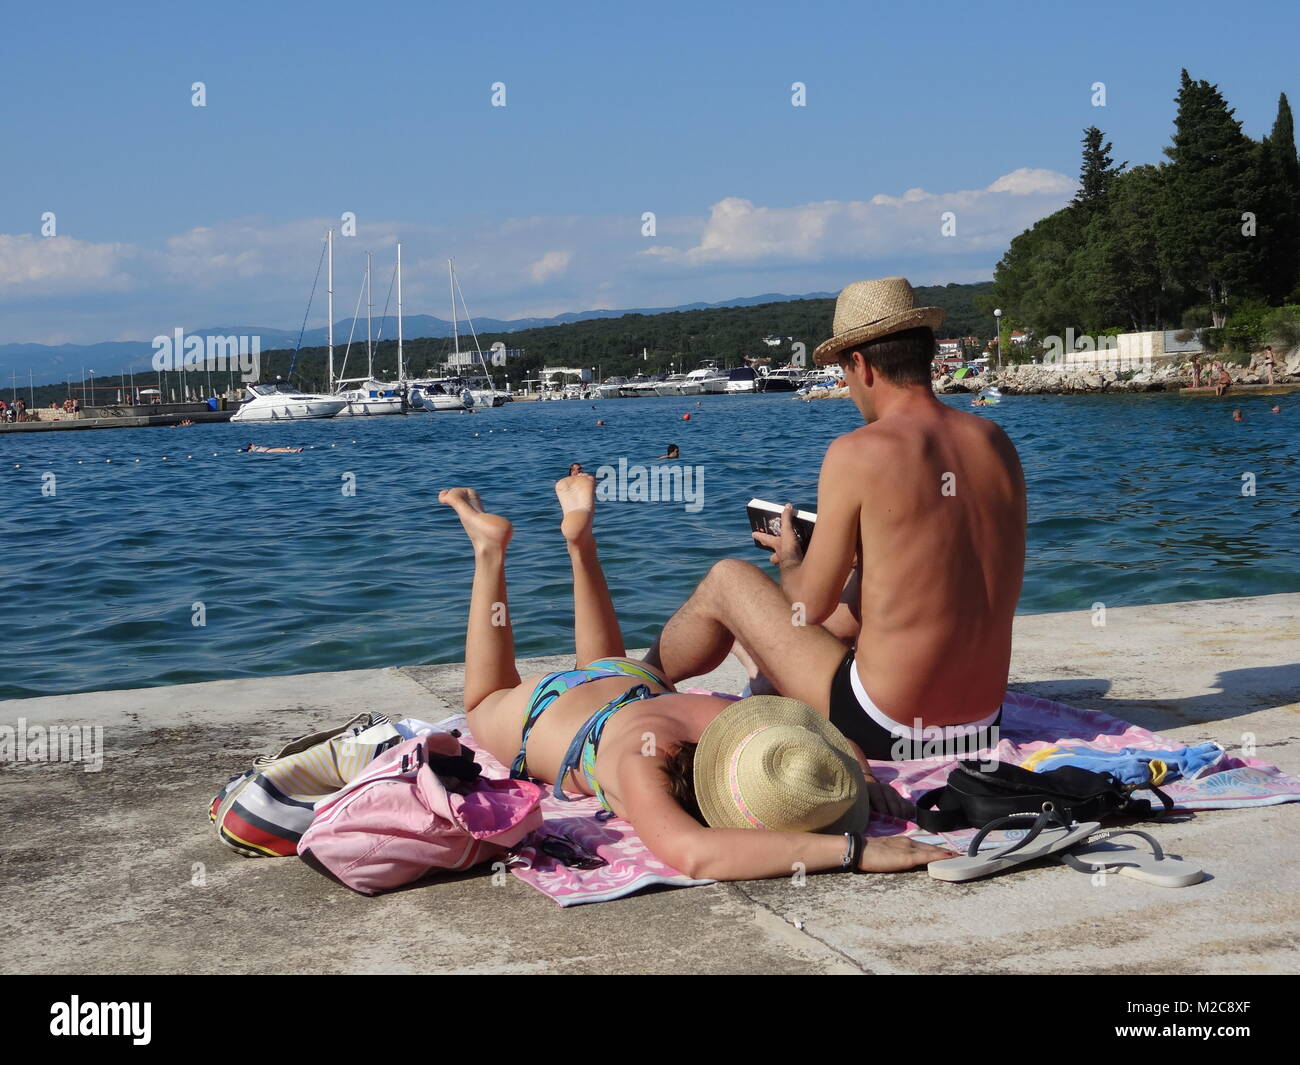 Die Füße hoch legen, Sommer, Sonne und mehr - die Urlauber freuen sich auf die schönsten Zeit des Jahres. Eine Frau liest ein Buch und telefoniert am Strand. Telefonieren in der EU ist seit dem 1. Juli 2013 billiger.  Ein Mann und eine Frau finden Entspannung. Stock Photo